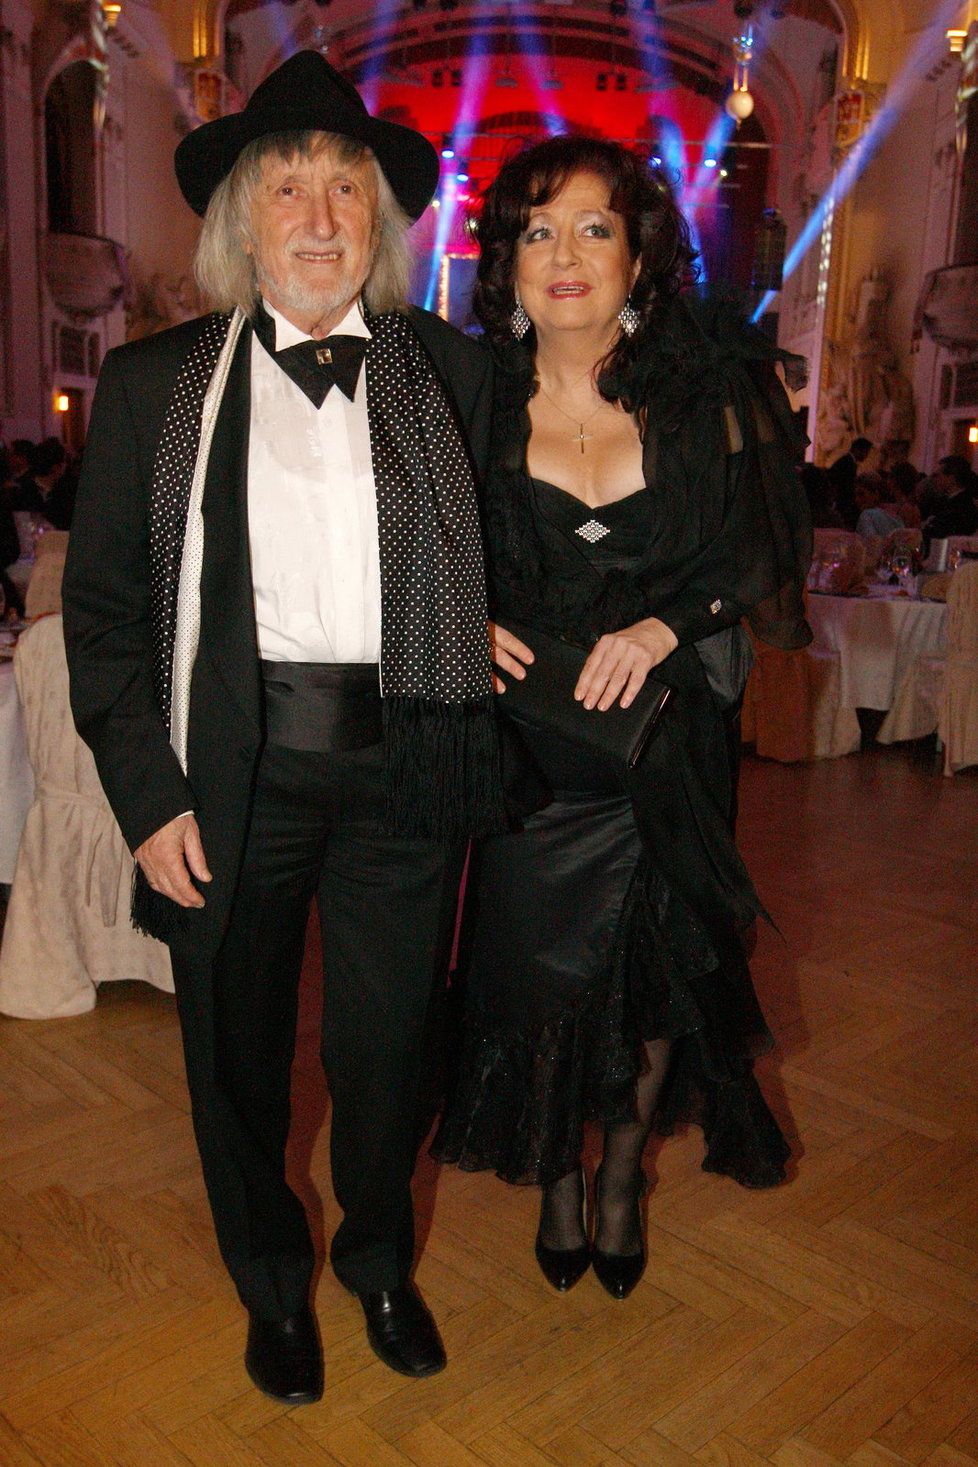 Režisér Juraj Jakubisko vyvedl svou manželku Deanu.